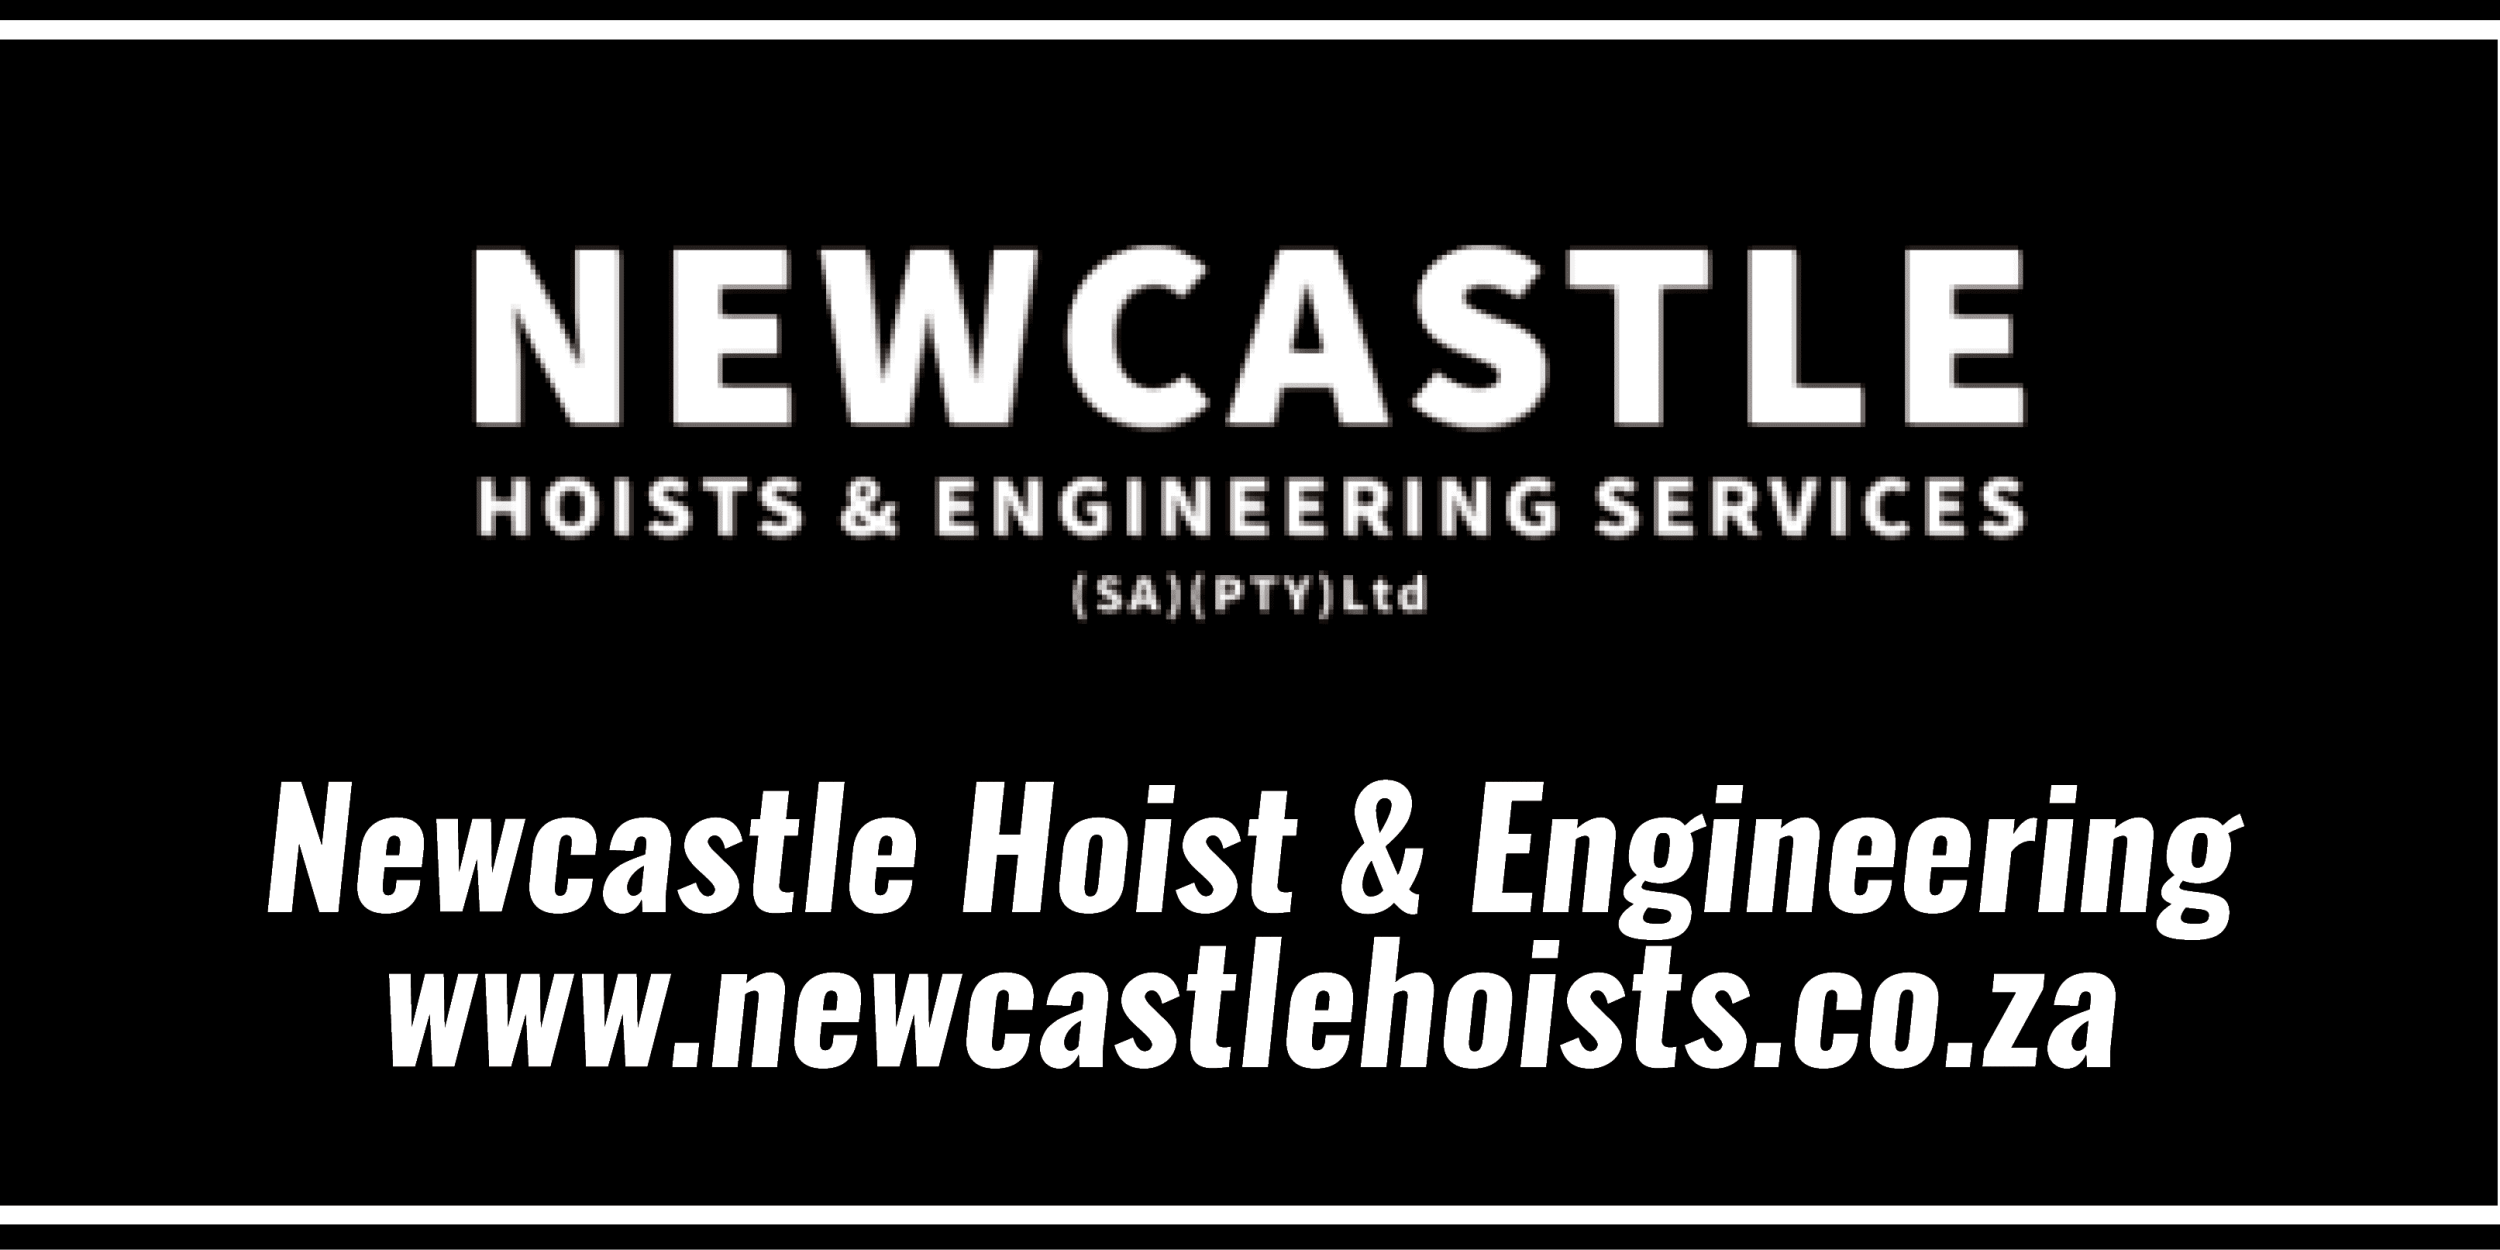 Newcastle Hoist & Engineering